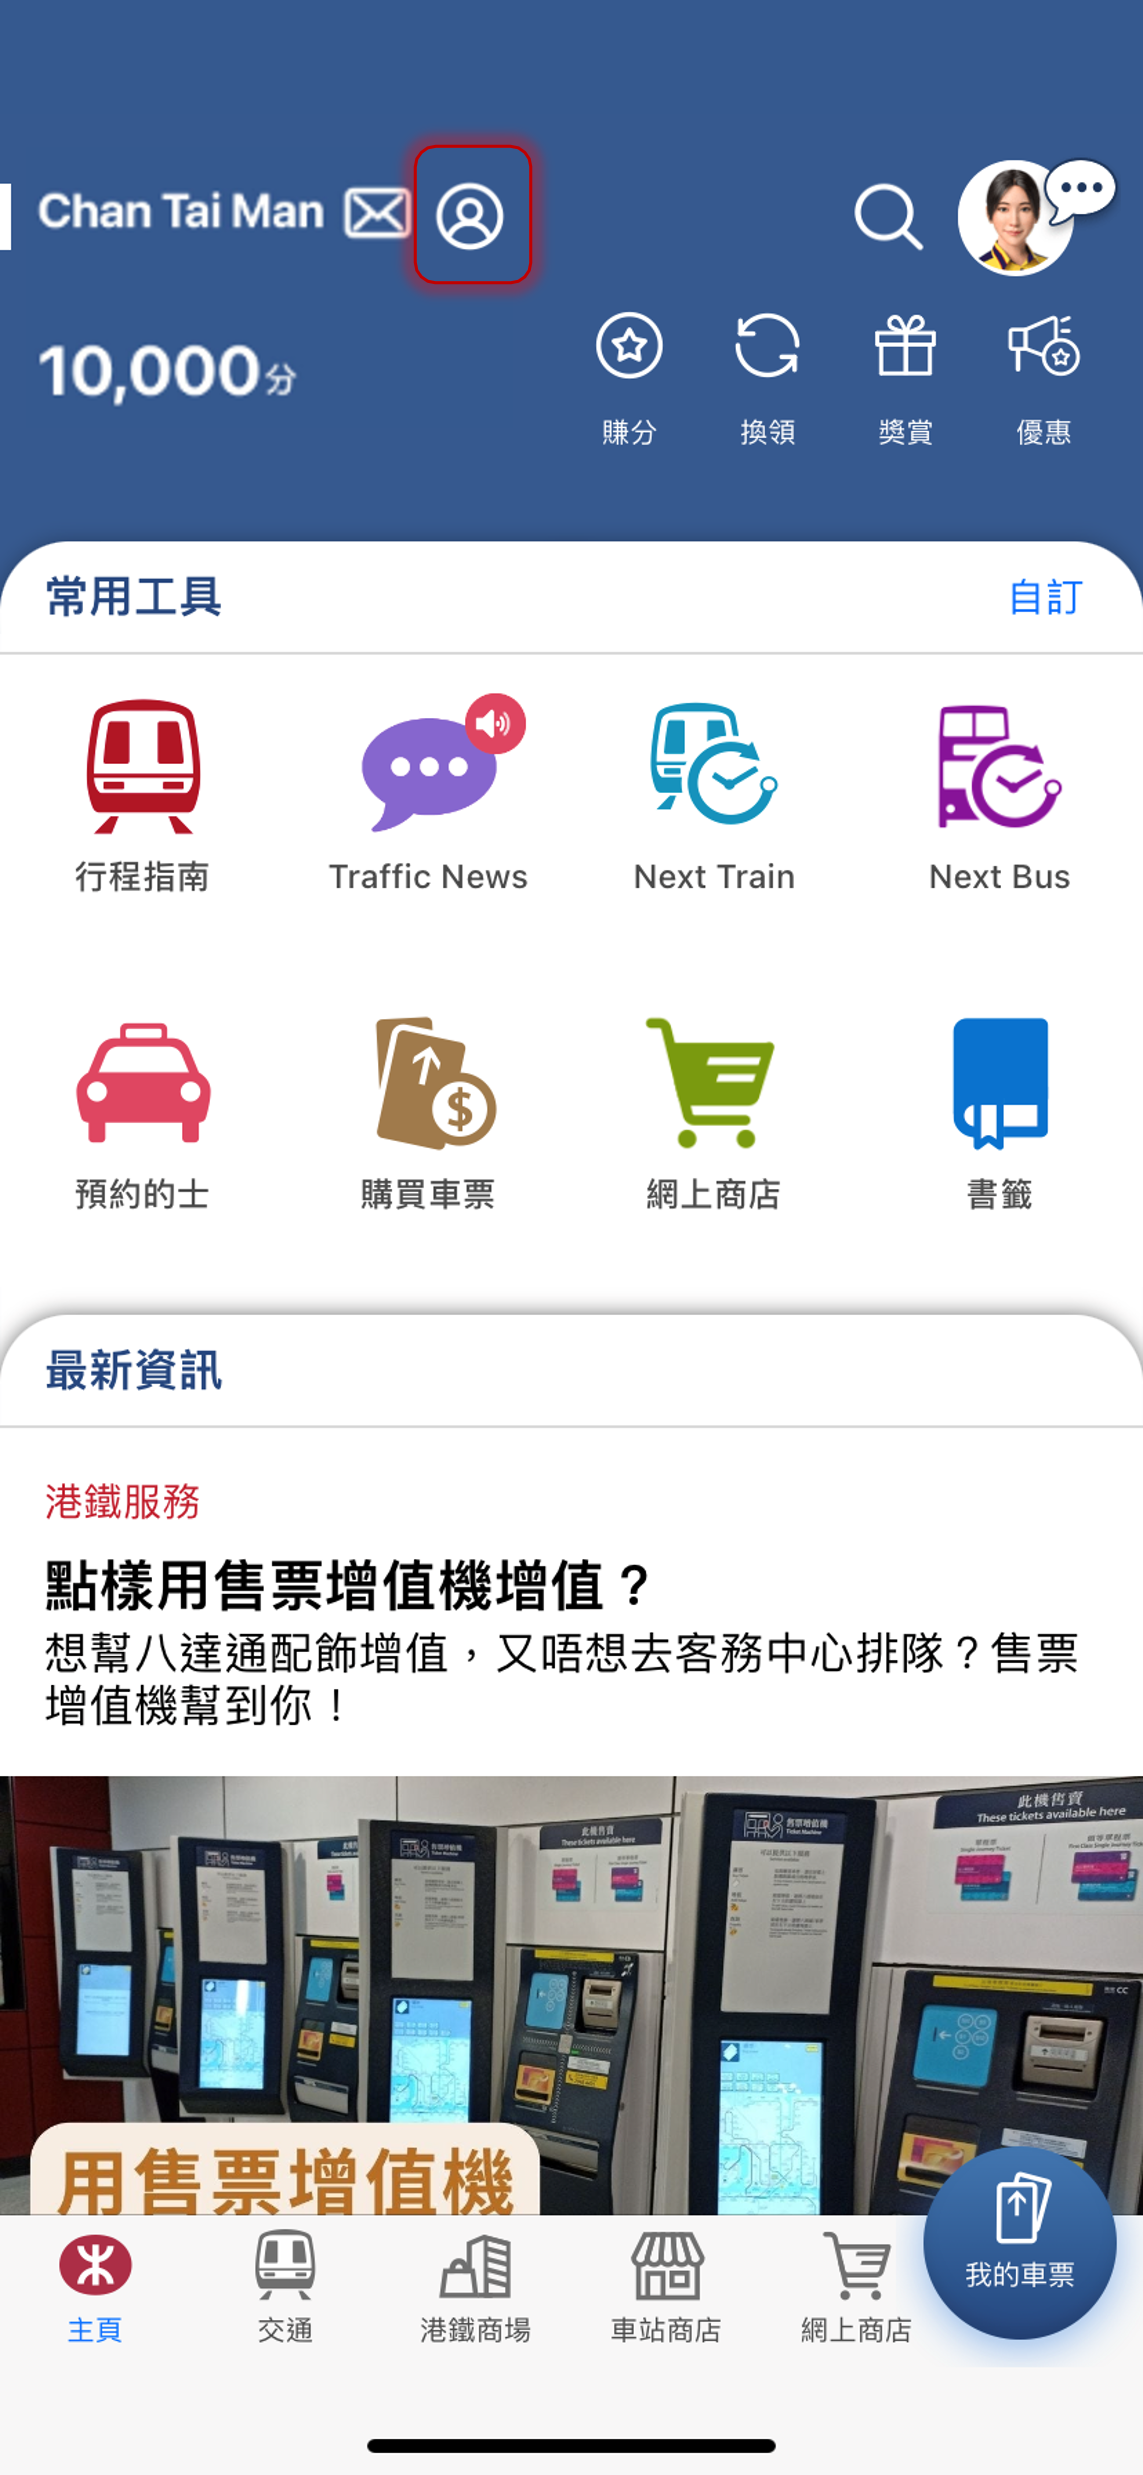 如用戶想更改流動電話號碼及個人密碼，可登入MTR Mobile並點選左上角的「基本資料」